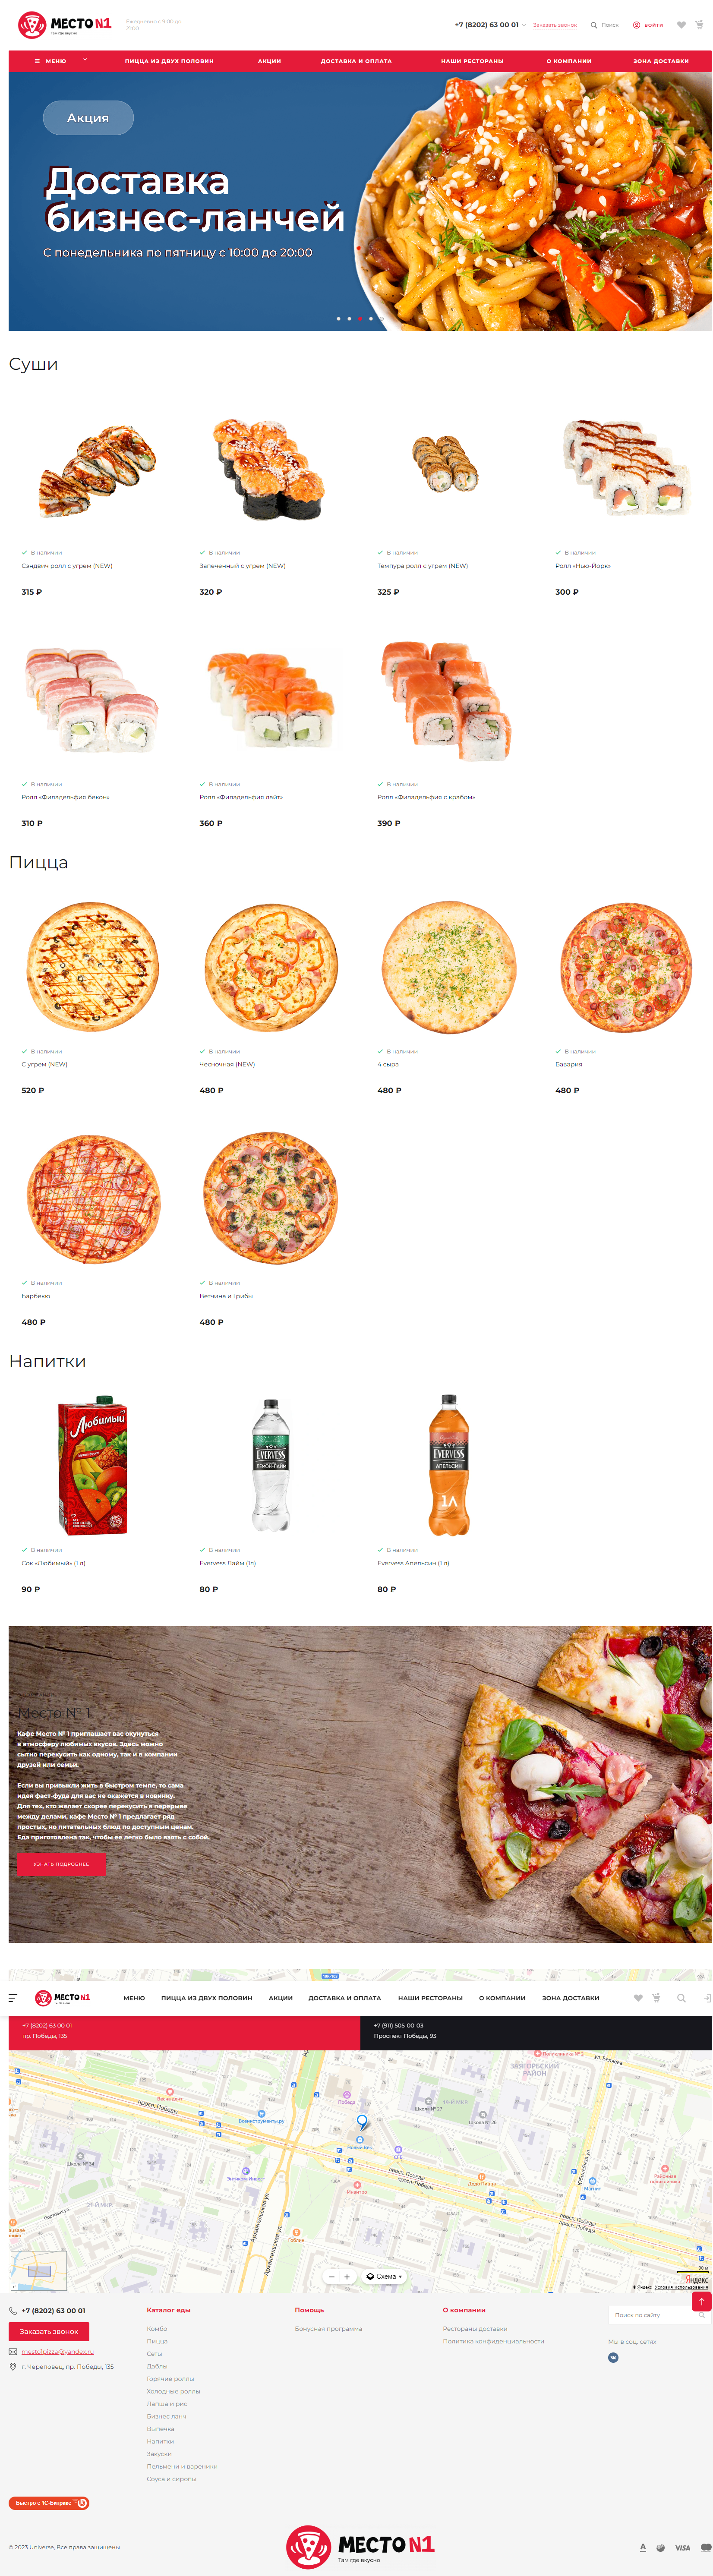 Редизайн сайта и настройка функционала системы для пиццерии в Череповце